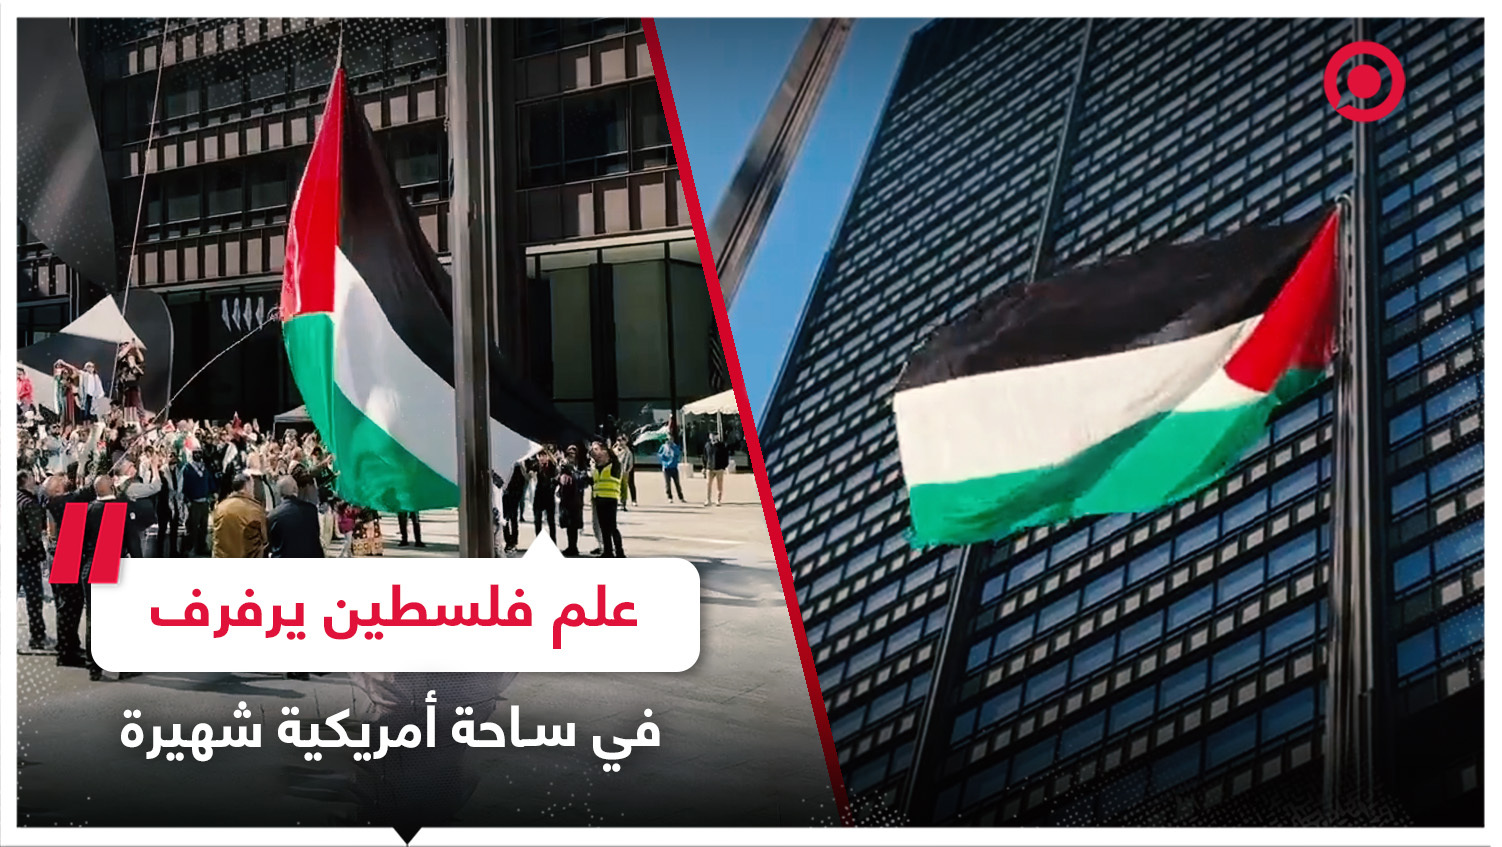 نشطاء يرفعون علما ضخما لفلسطين على مبنى وسط ساحة أمريكية شهيرة